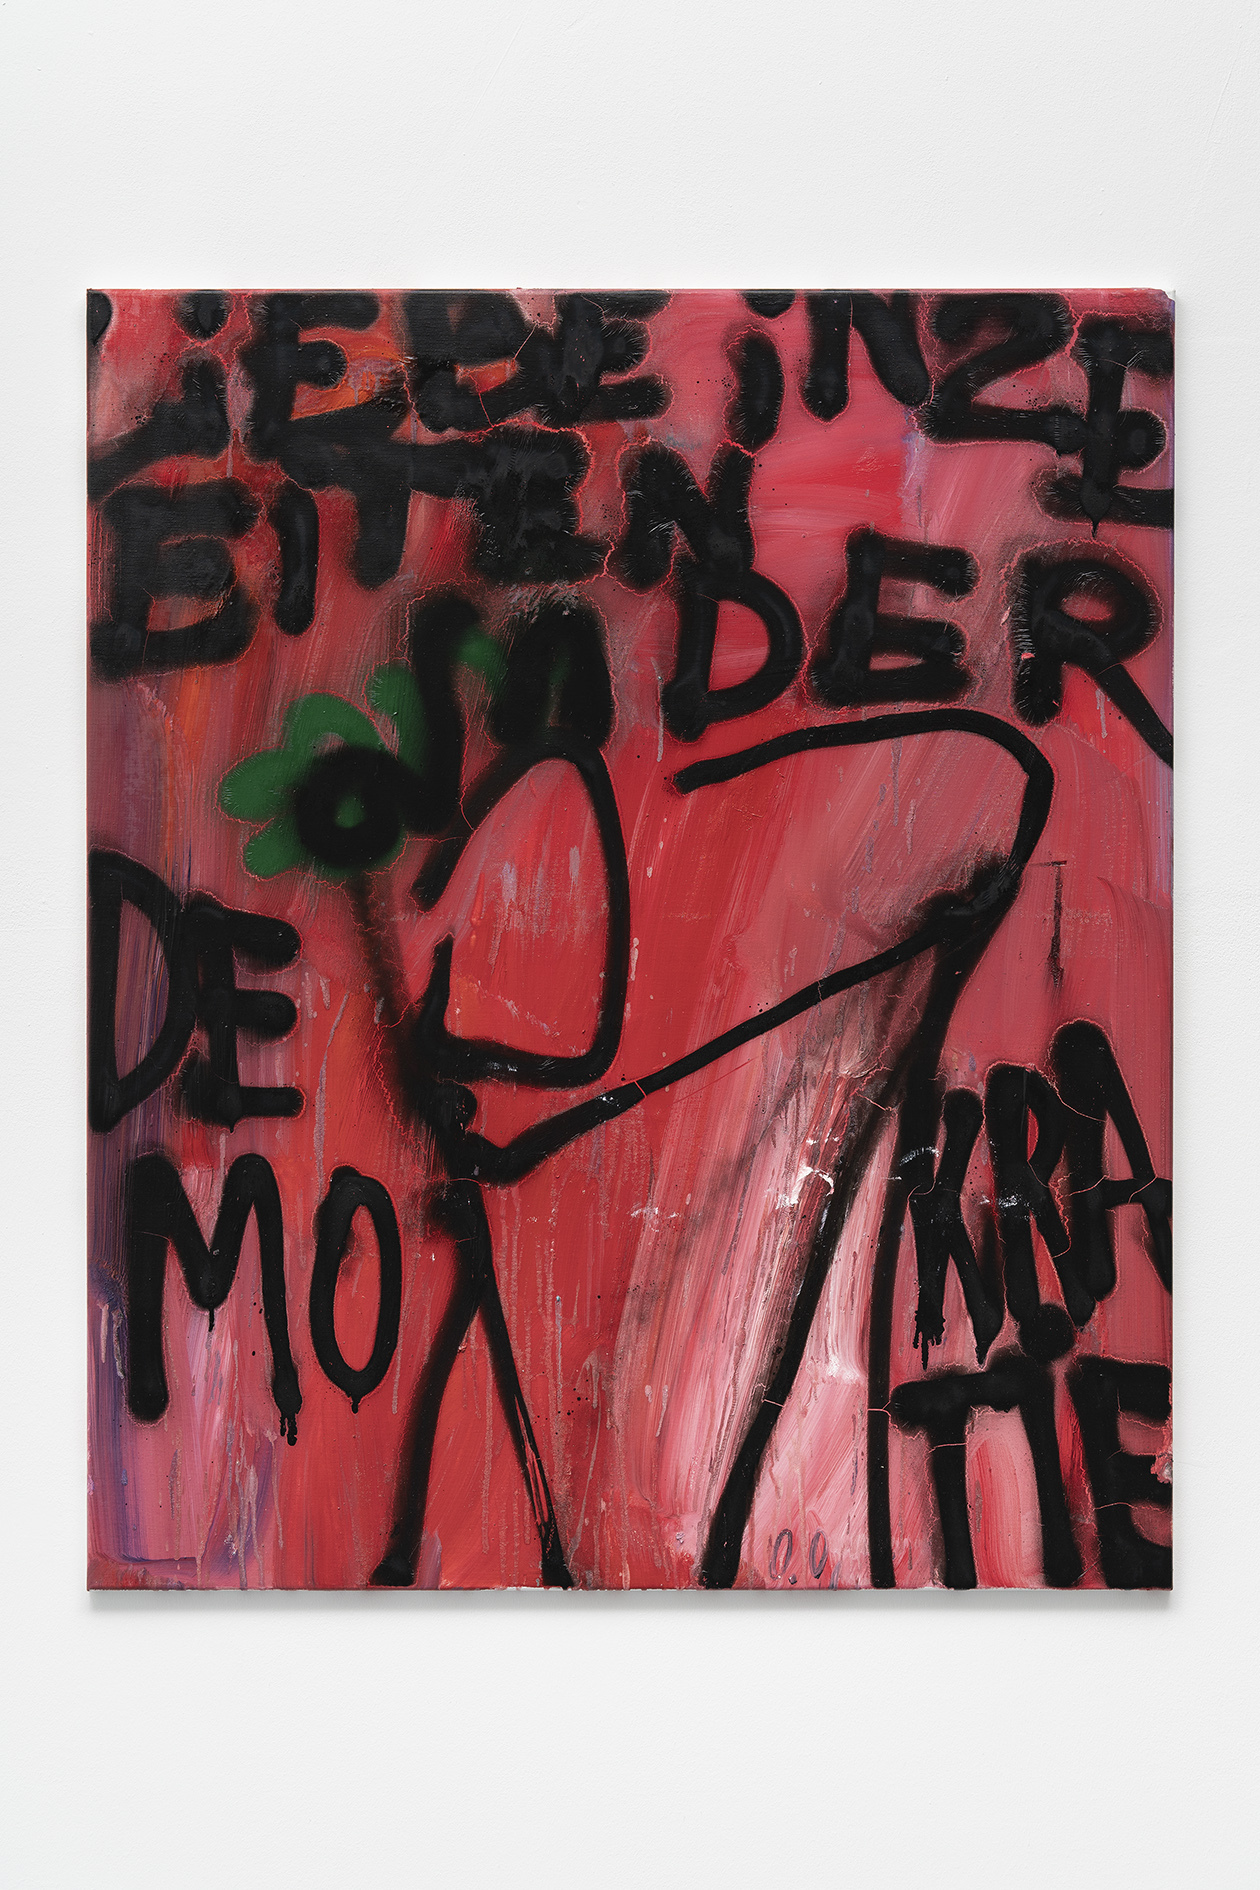 Osmar Osten, Liebe in Zeiten der Demokratie, 2021 – Oil and spray paint on canvas, 120 x 100 x 3 cm. Courtesy the artist  and Mountains, Berlin.